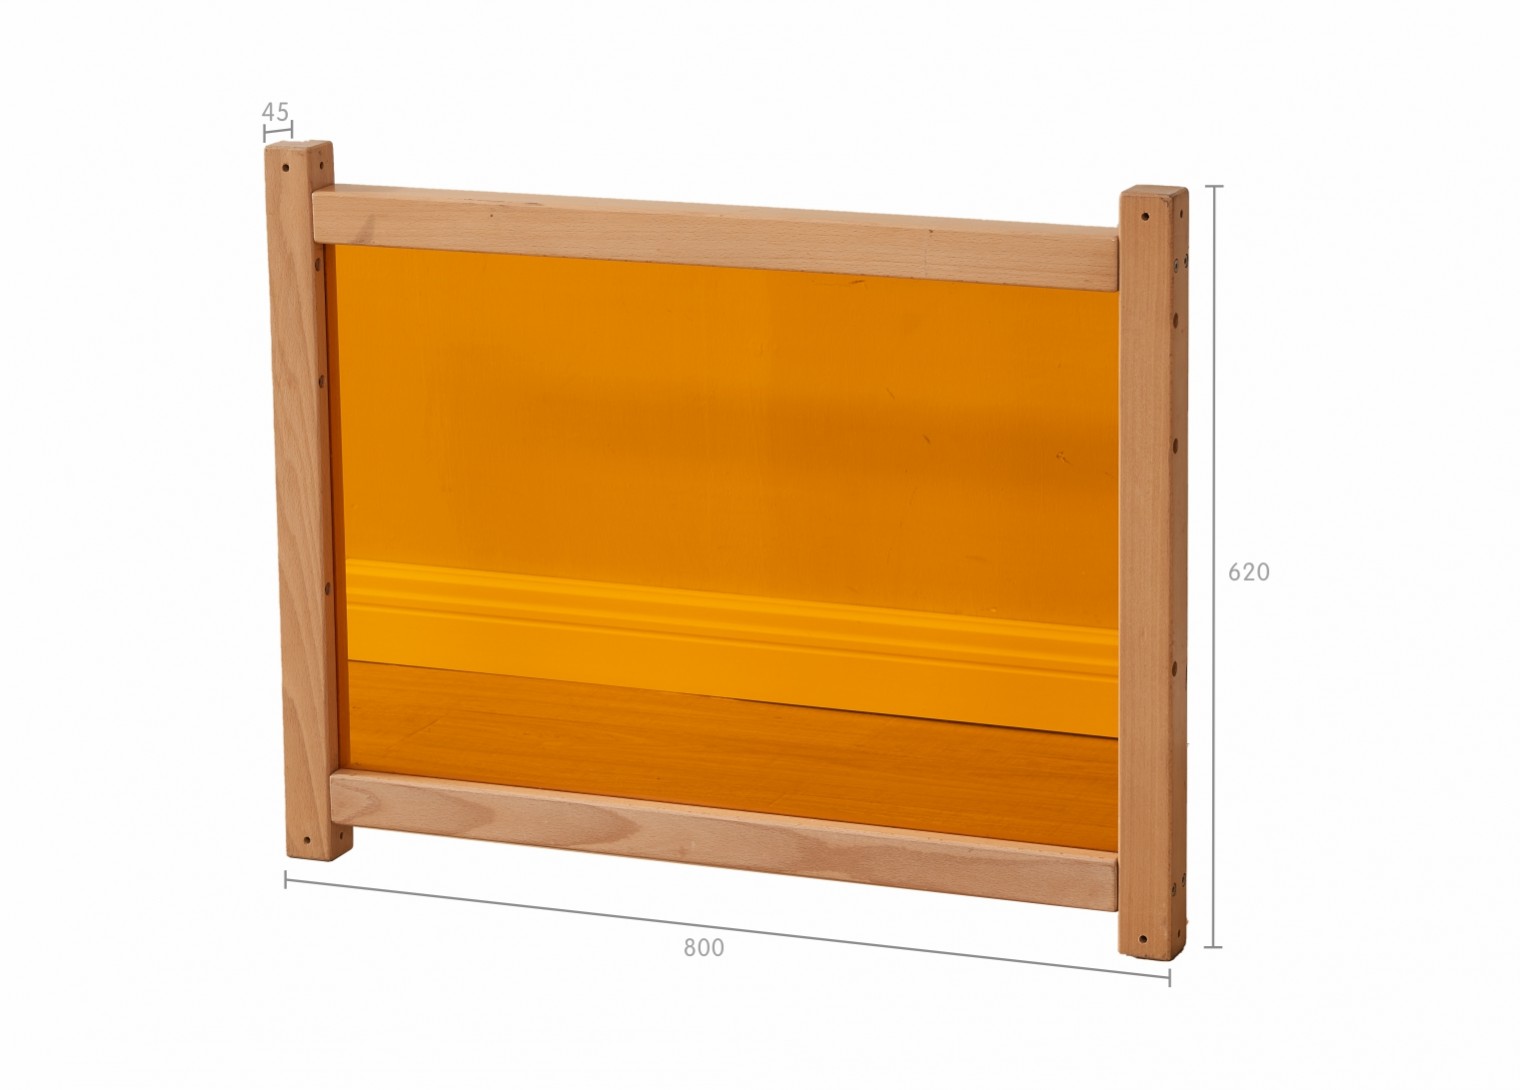 620H x 800L Divider Panel - Translucent Orange